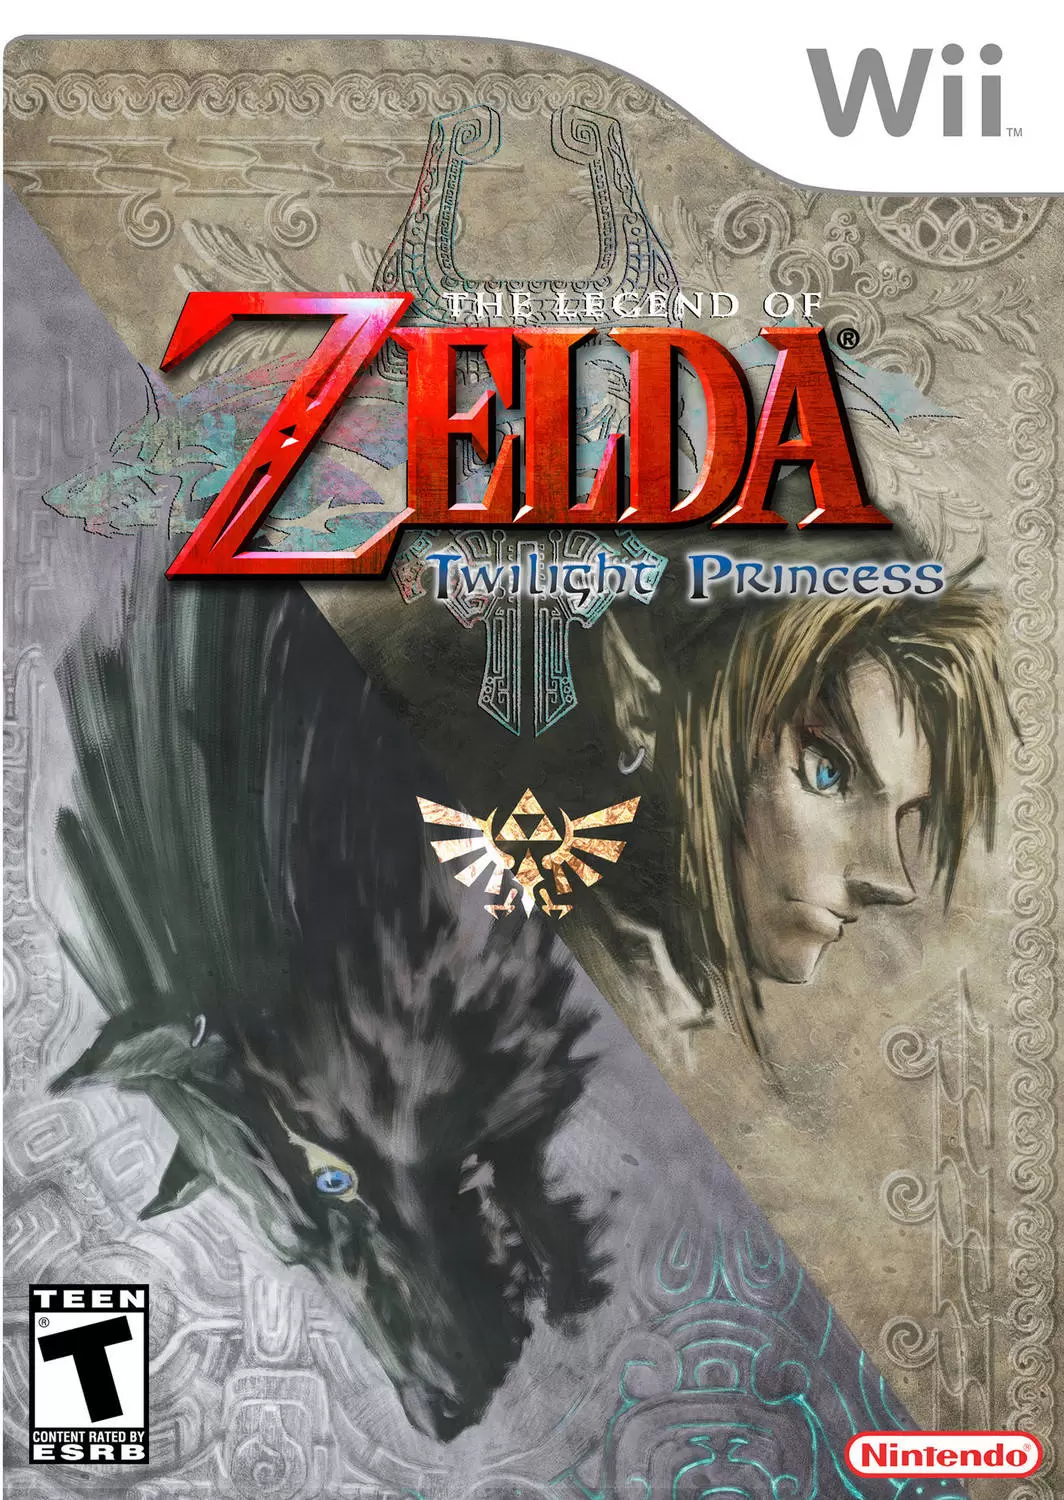 Nintendo Wii Games - The Legend of Zelda: Twilight Princess